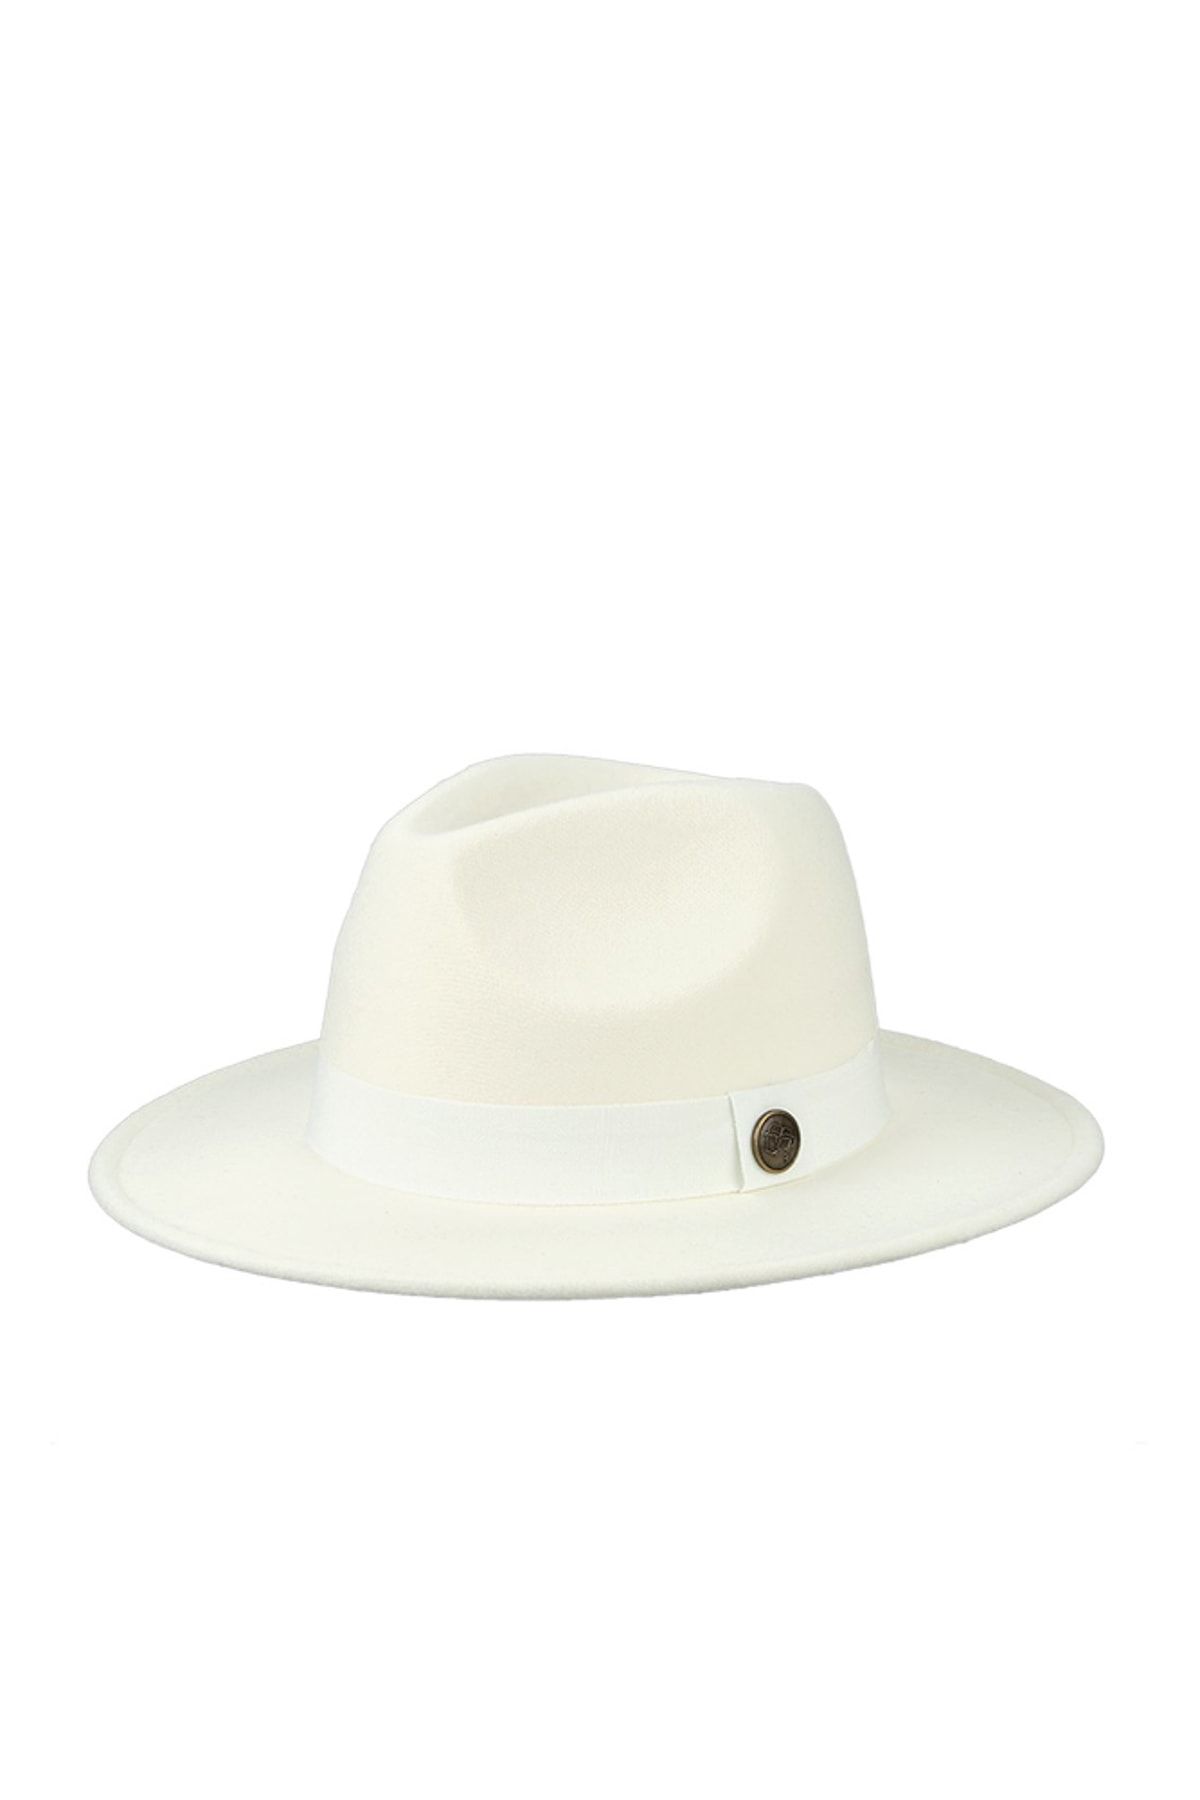 CosmoOutlet Beyaz Panama Klasik Polar Kadın Şapka